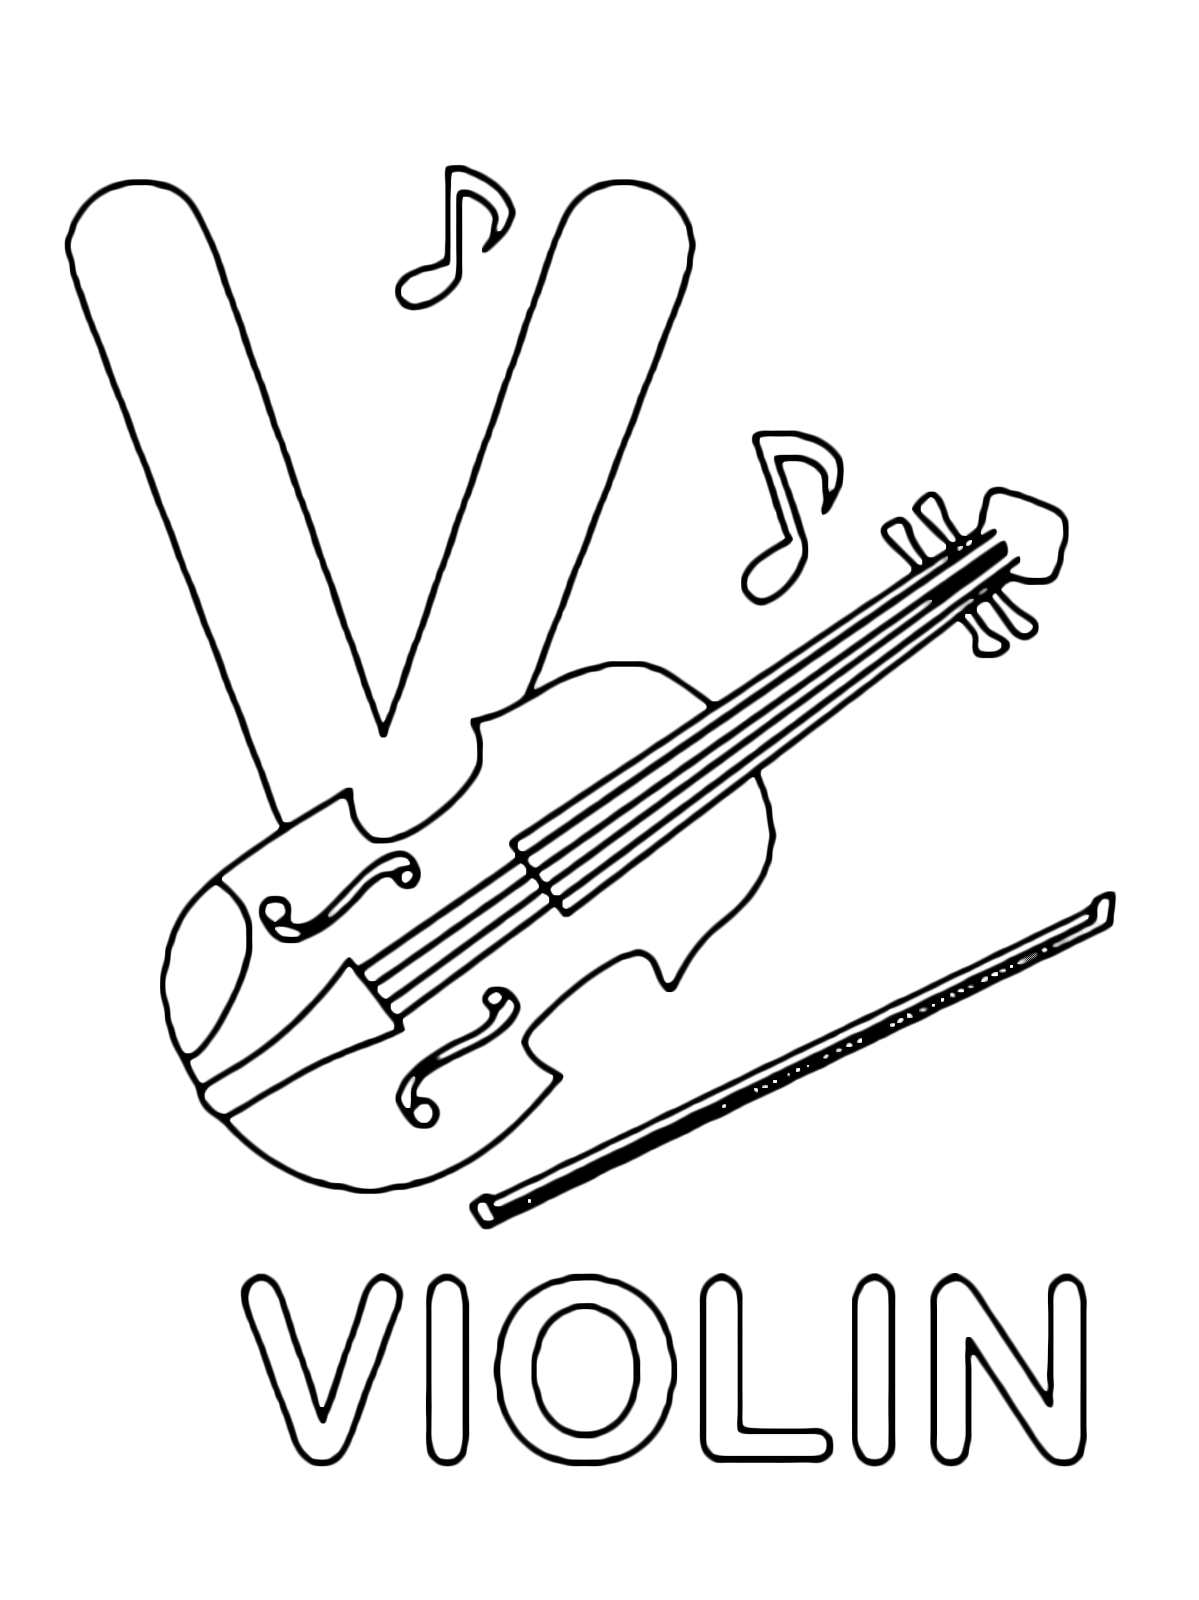 Lettere e numeri - Lettera V in stampatello di violin (violino) in Inglese